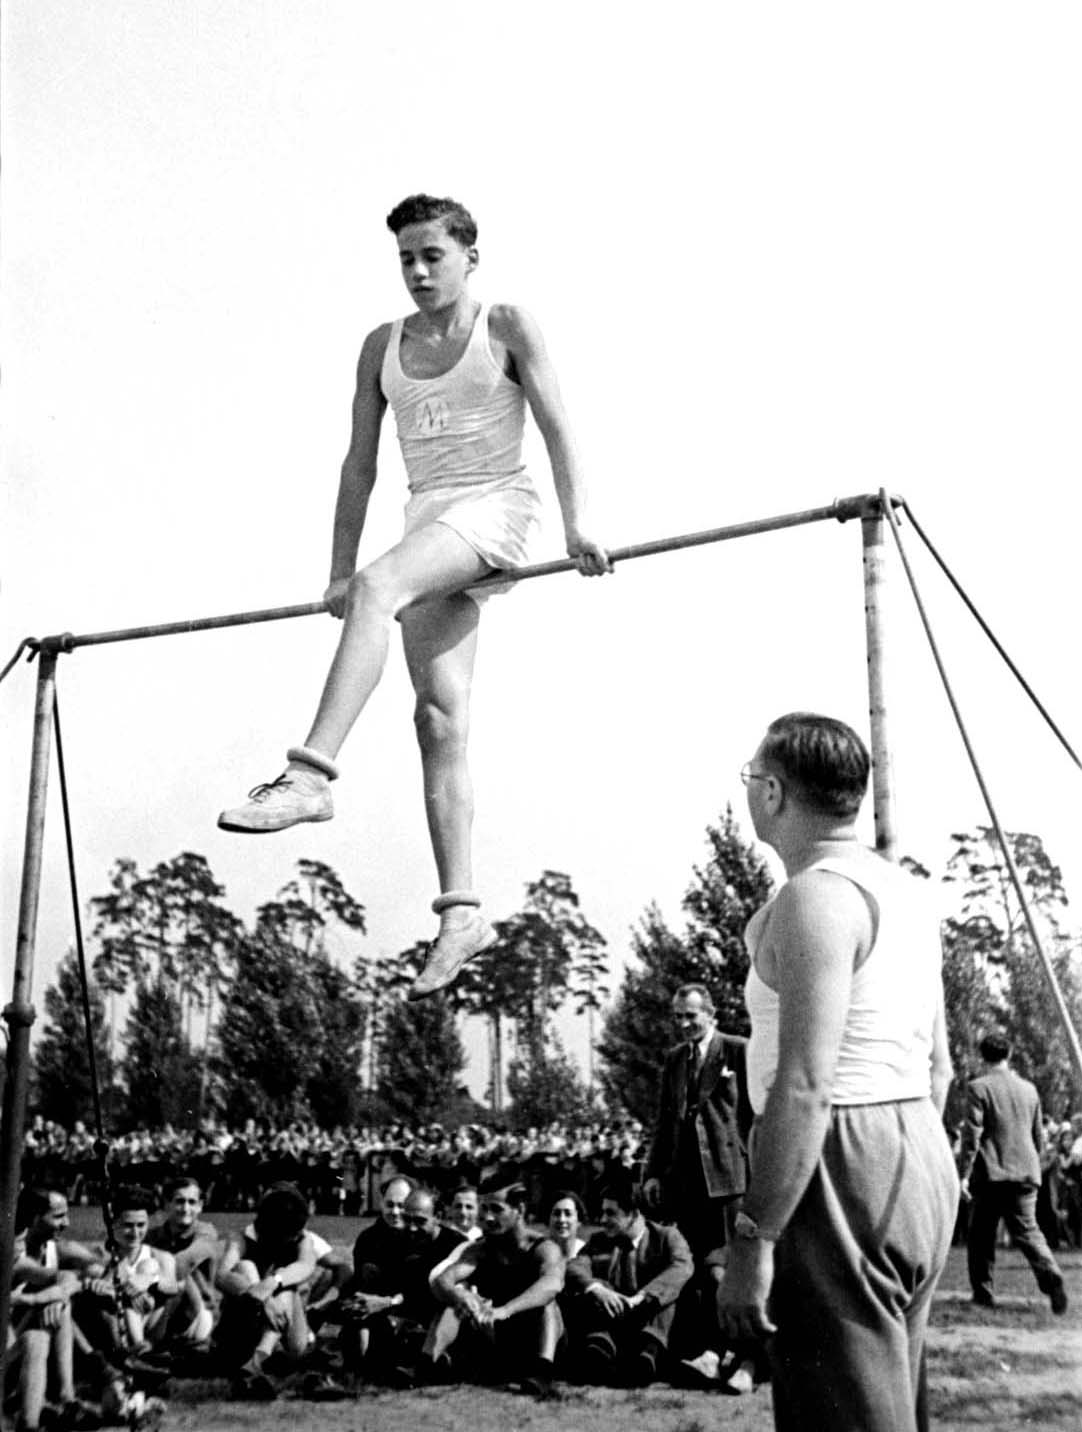 ברלין, גרמניה, 1935, מופע התעמלות  במסגרת ארועי ספורט של בתי ספר יהודיים